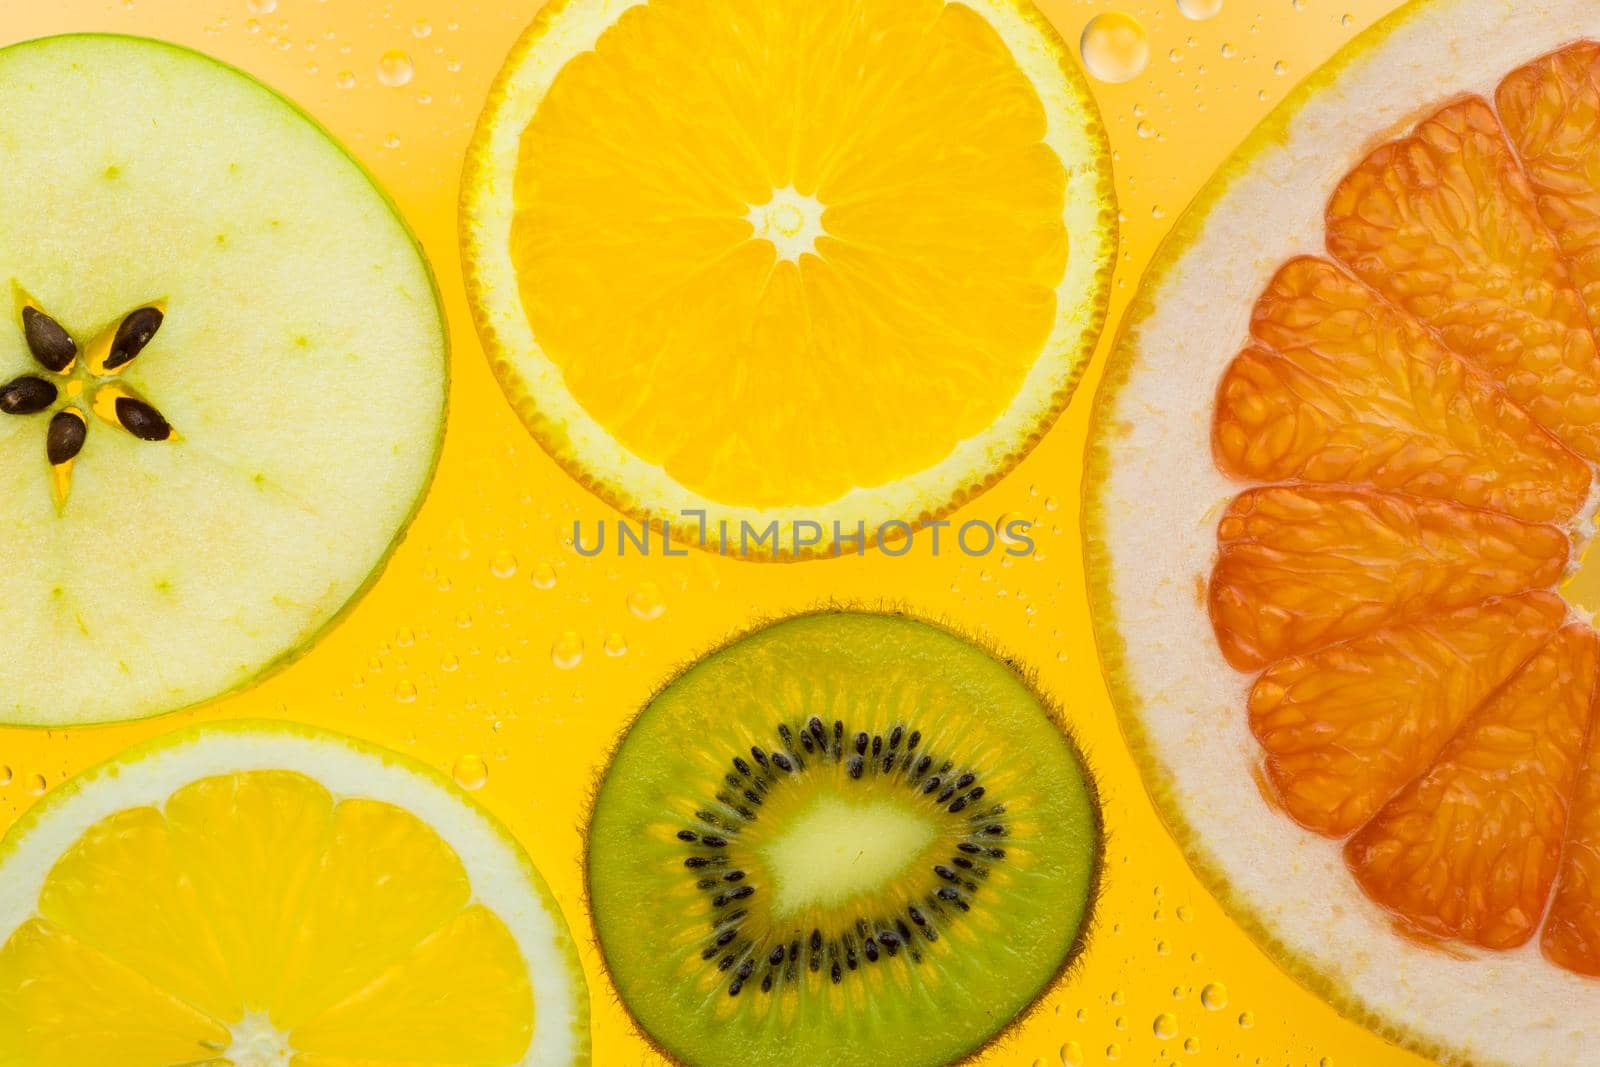 orange grapefruit and kiwi slices on yellow background